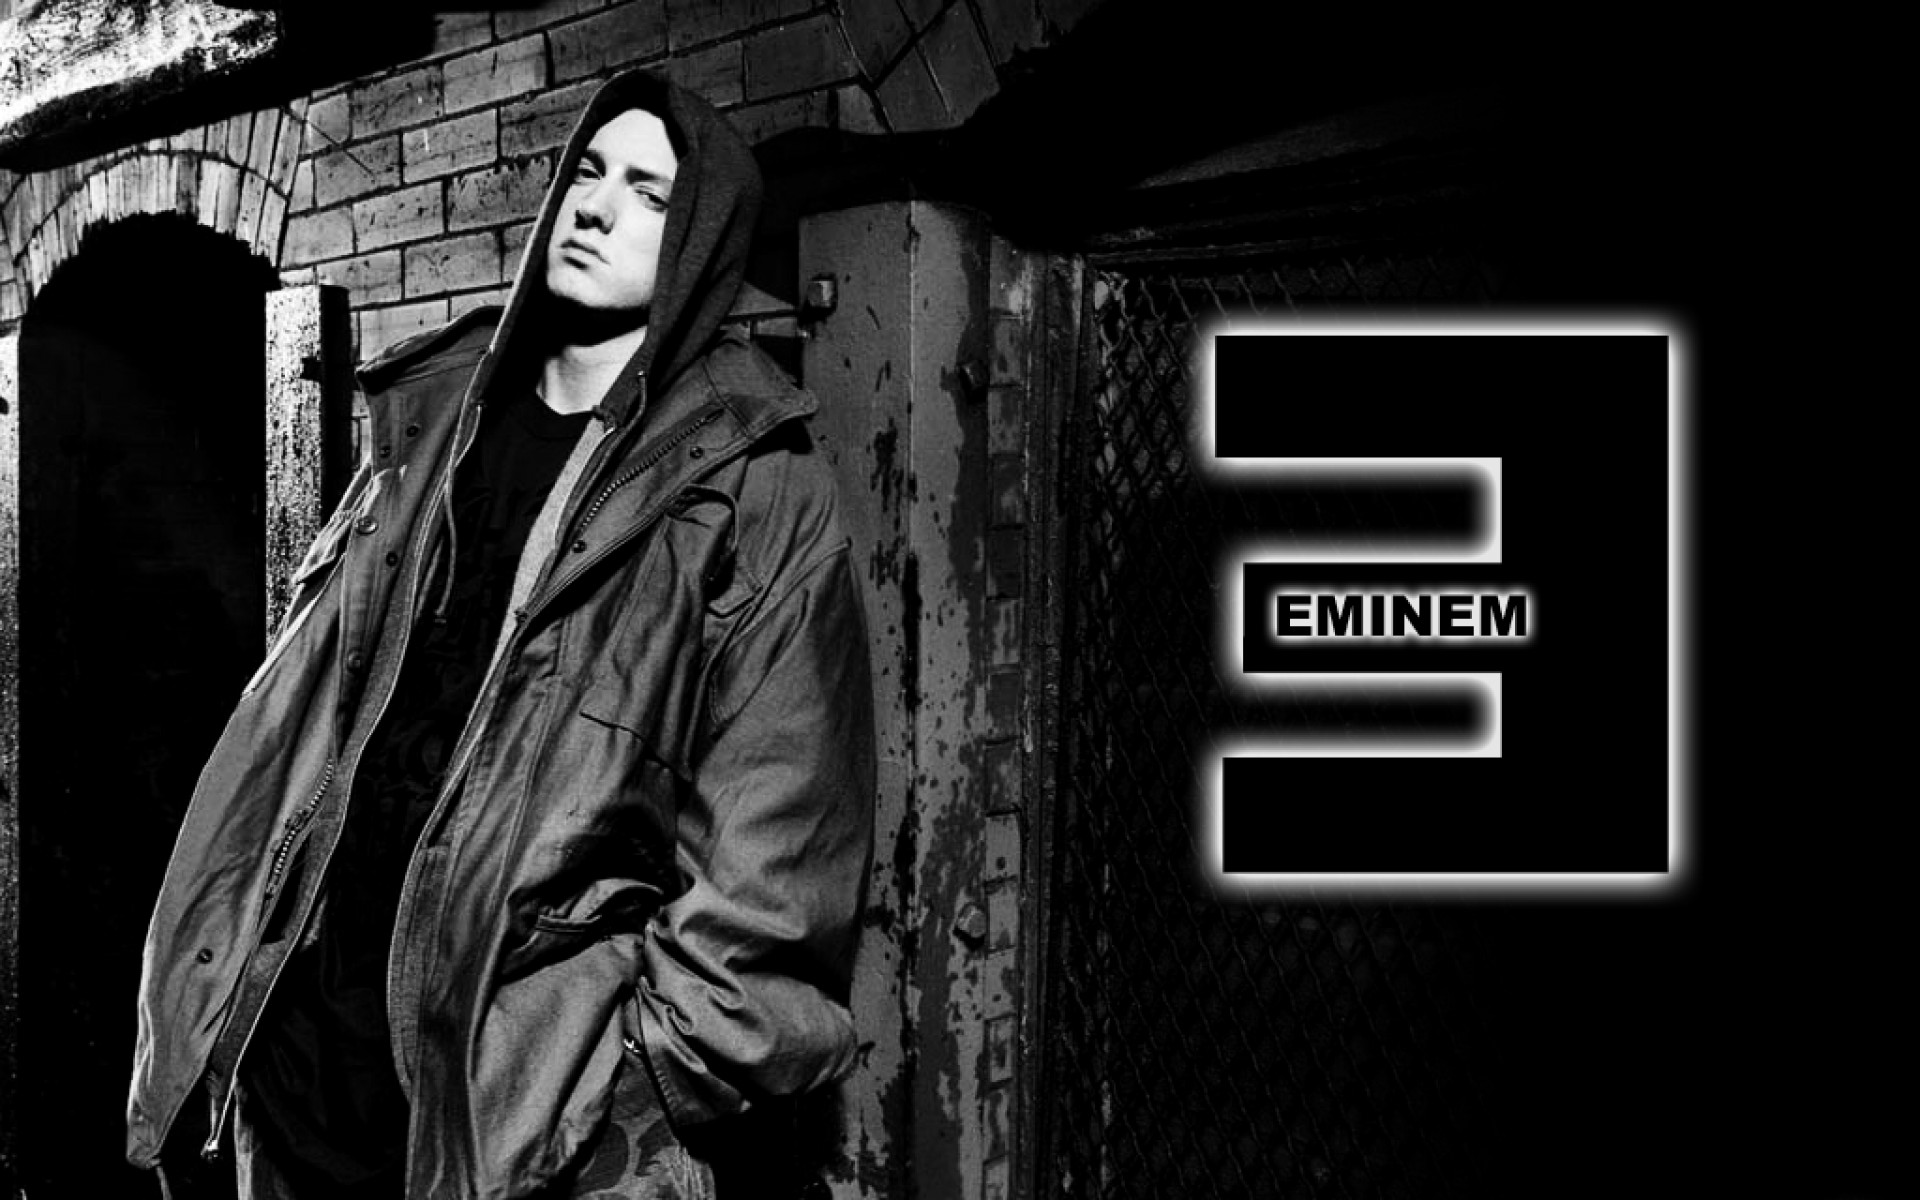 Free download 1920x1200px Eminem 8 Mile Wallpaper [1920x1200] for your  Desktop, Mobile & Tablet | Explore 27+ Eminem 8 Mile Wallpaper HD | Eminem  8 Mile Wallpaper, 8 Mile Wallpaper, Eminem Wallpaper 8 Mile